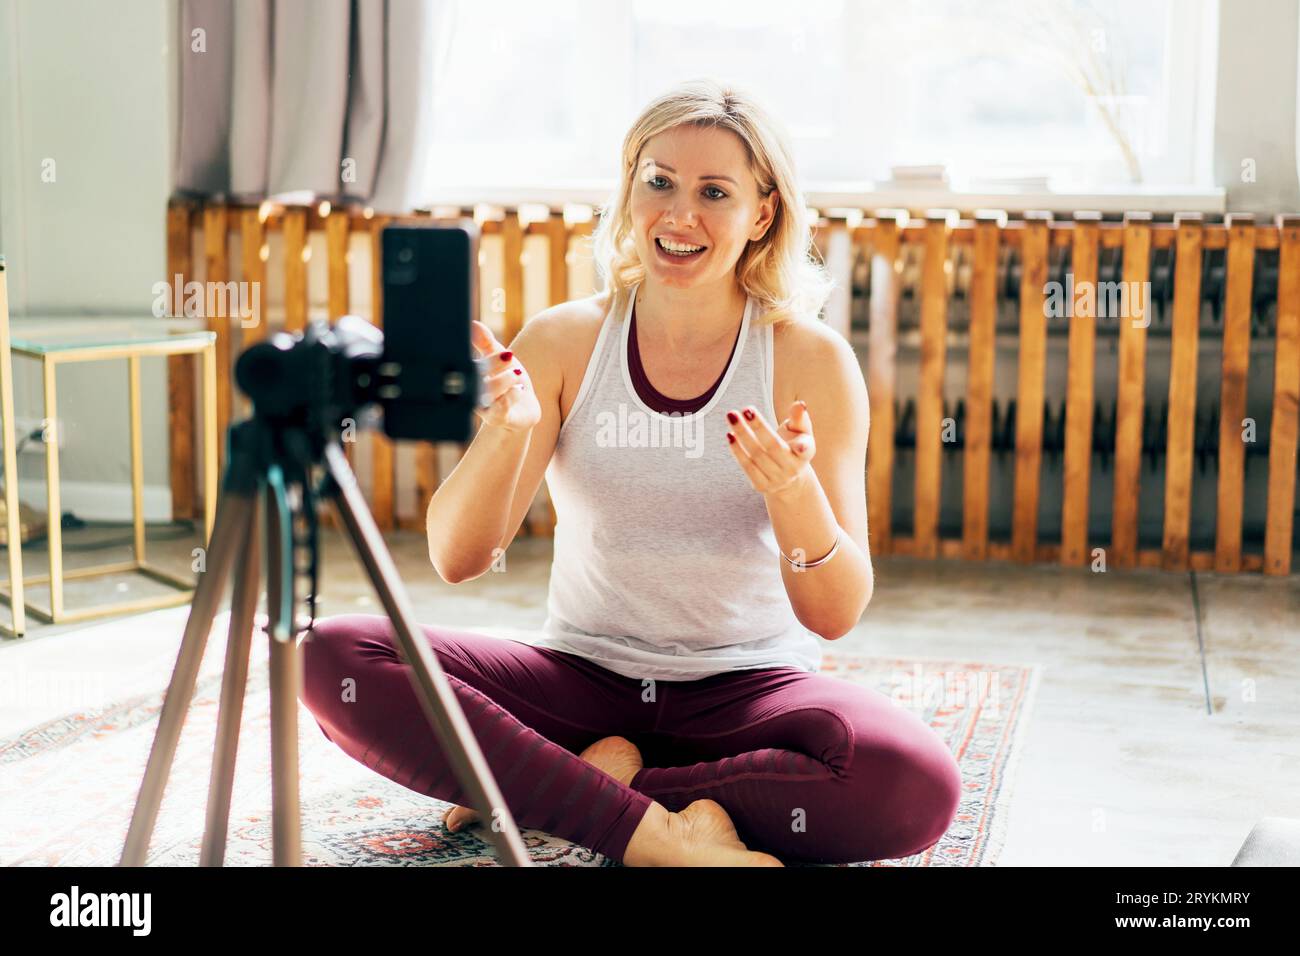 Sportliche Fitness- und Yoga-Bloggerin in Sportswear, die während des Trainings zu Hause Video vom Training auf dem Handy aufzeichnet. Stockfoto